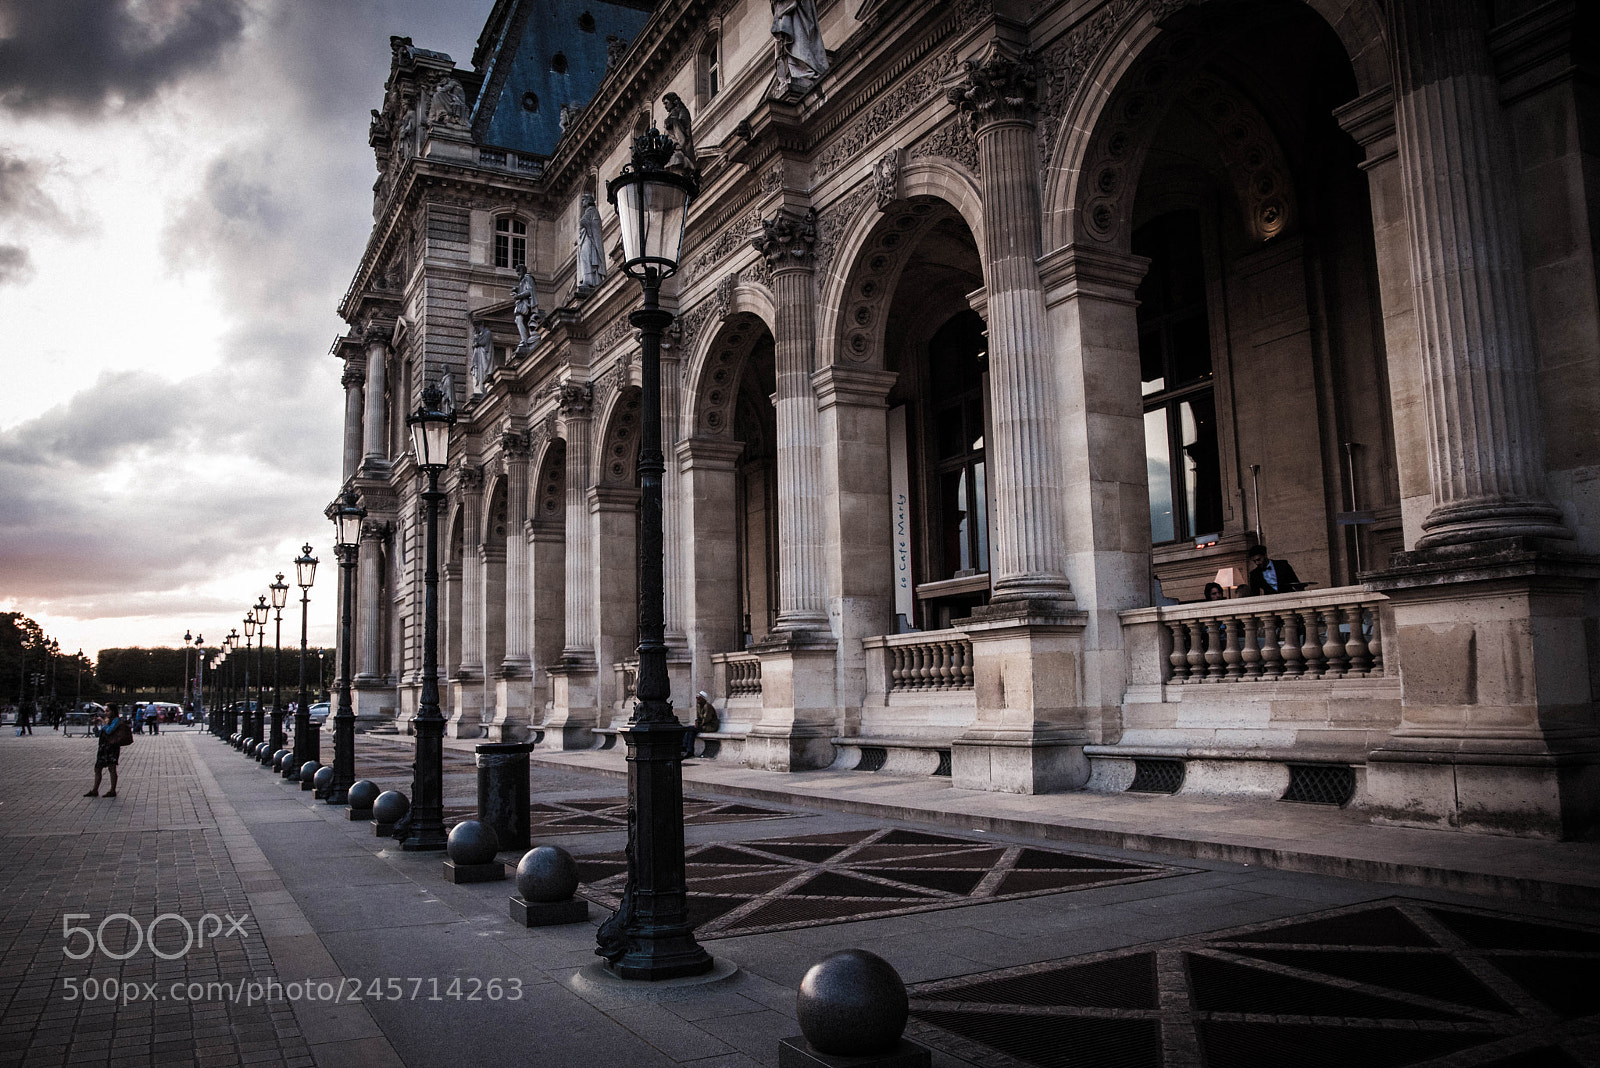 Nikon D810 sample photo. Lourve palace, paris at photography